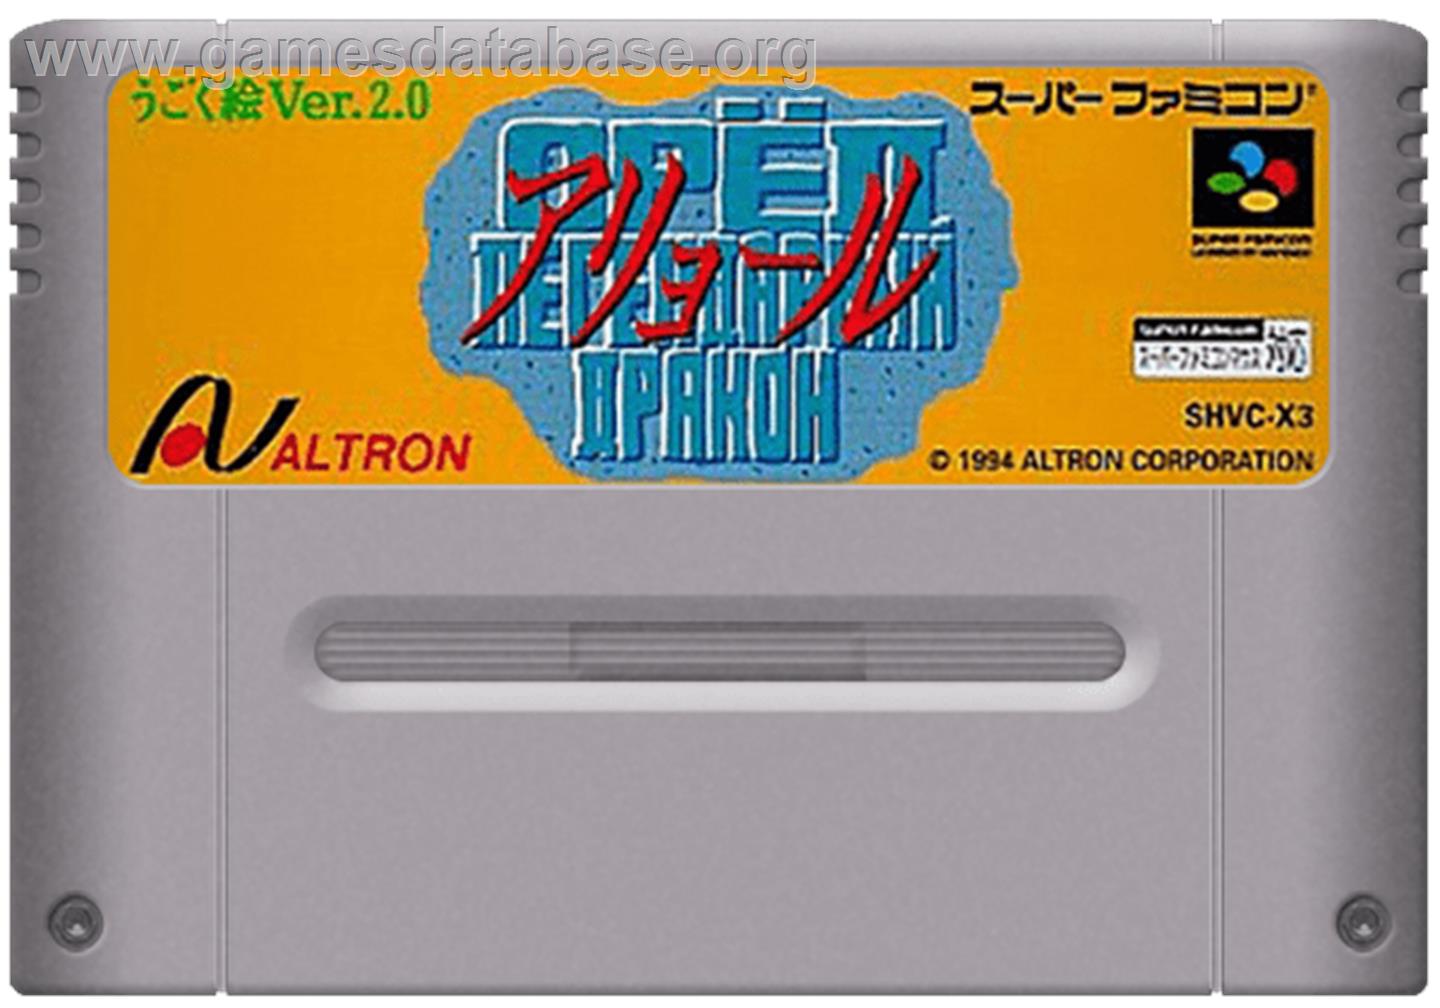 Ugoku E Ver. 2.0: Aryol - Nintendo SNES - Artwork - Cartridge